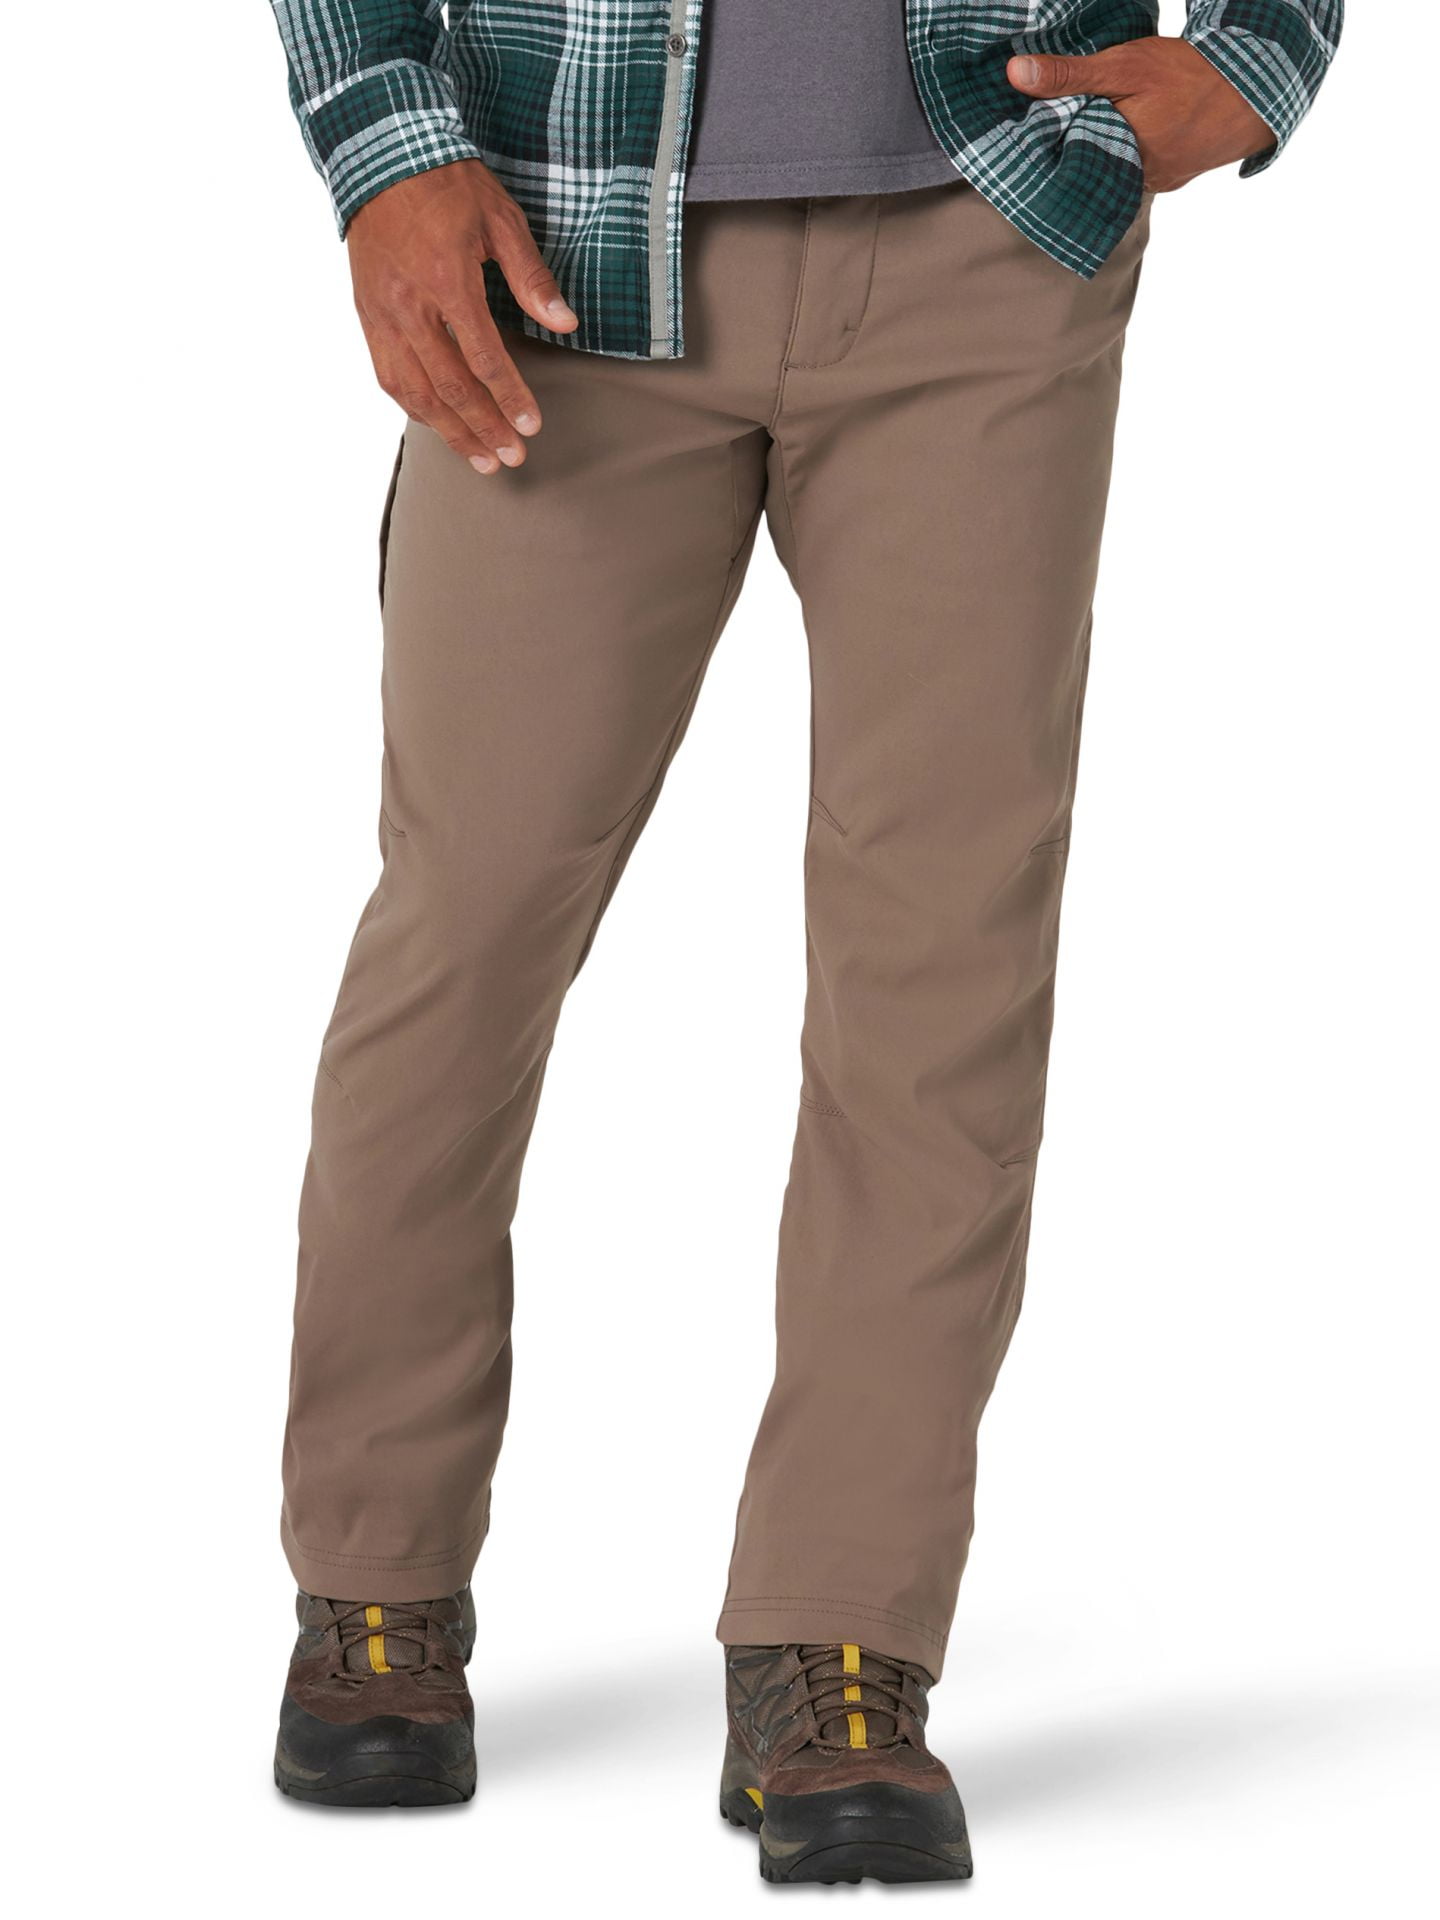 Wrangler Men's ATG Fleece Lined Pant, Falcon, 40X32 